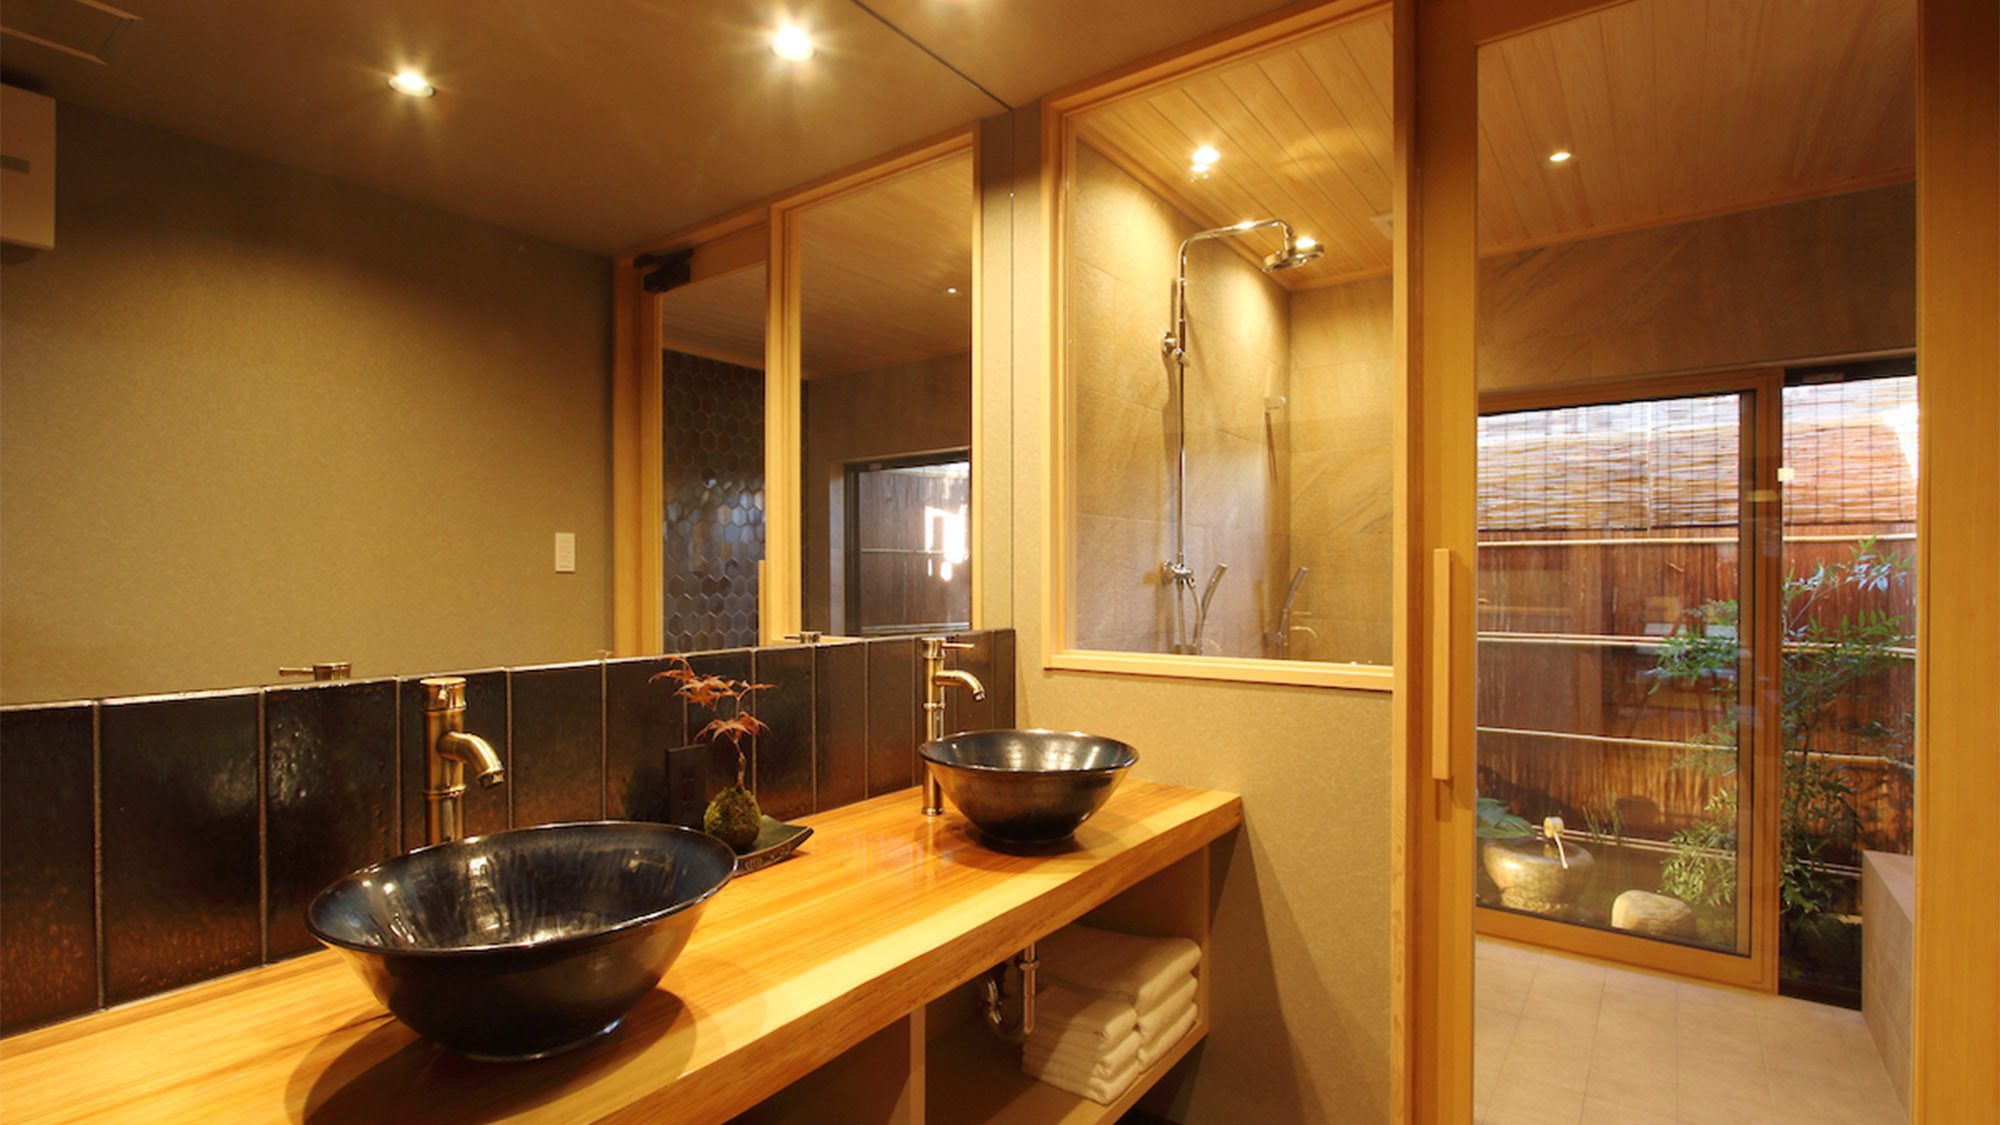 ・1F浴室洗面所北山杉を用いたカウンターに清水焼の洗面器が美しい